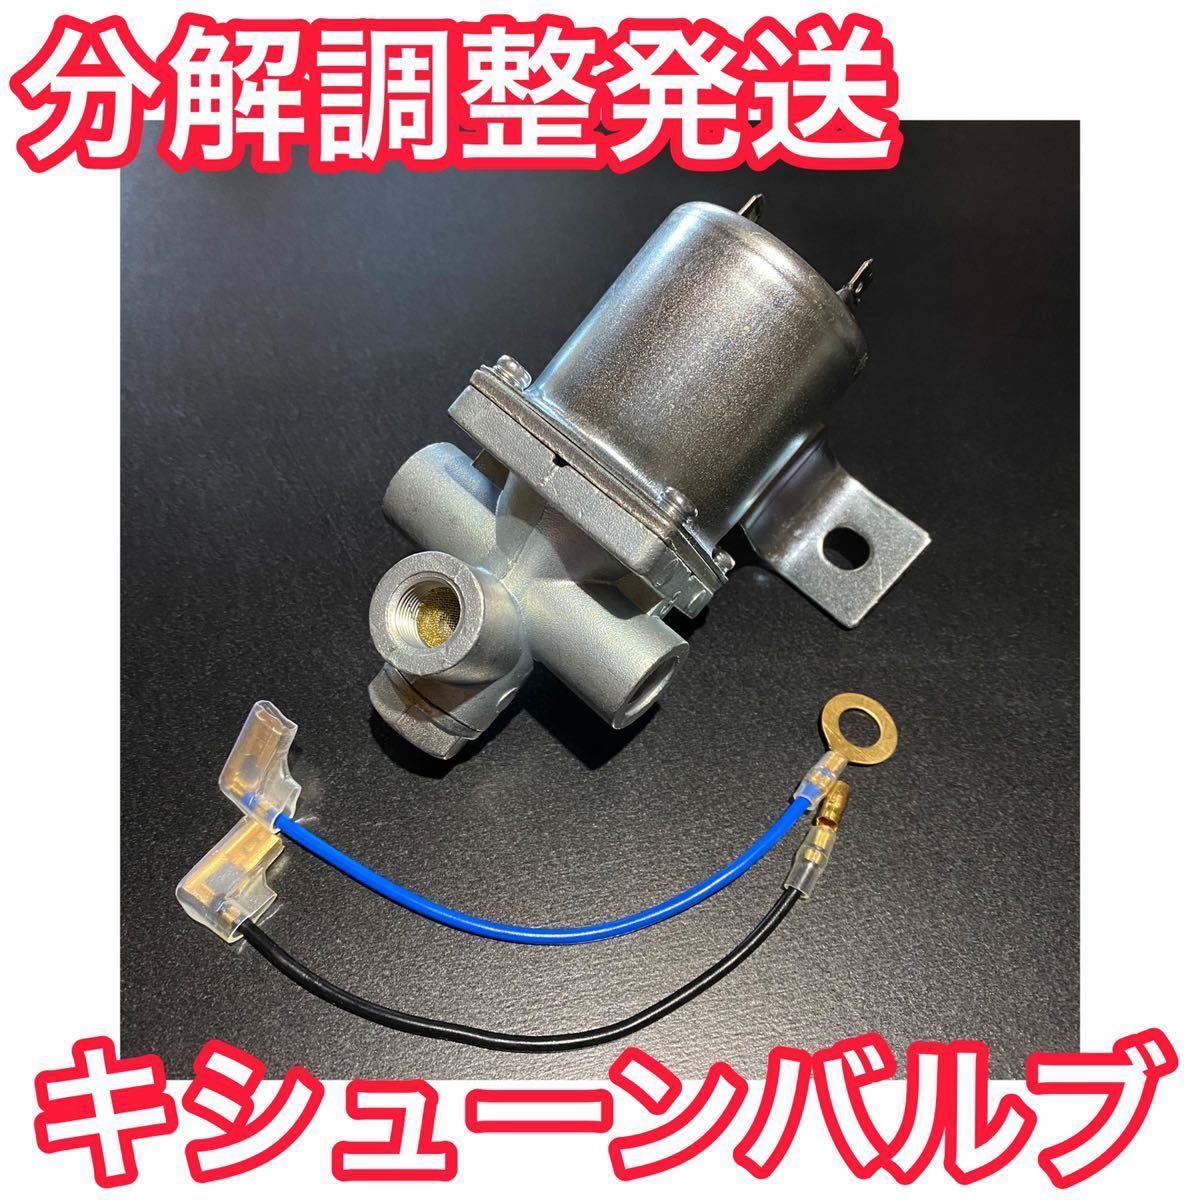 ki shoe n valve(bulb) installation 8 point set [17 Super Great . pressure air take out kit ] air hose wiring etc. yan key horn kishun valve(bulb) 